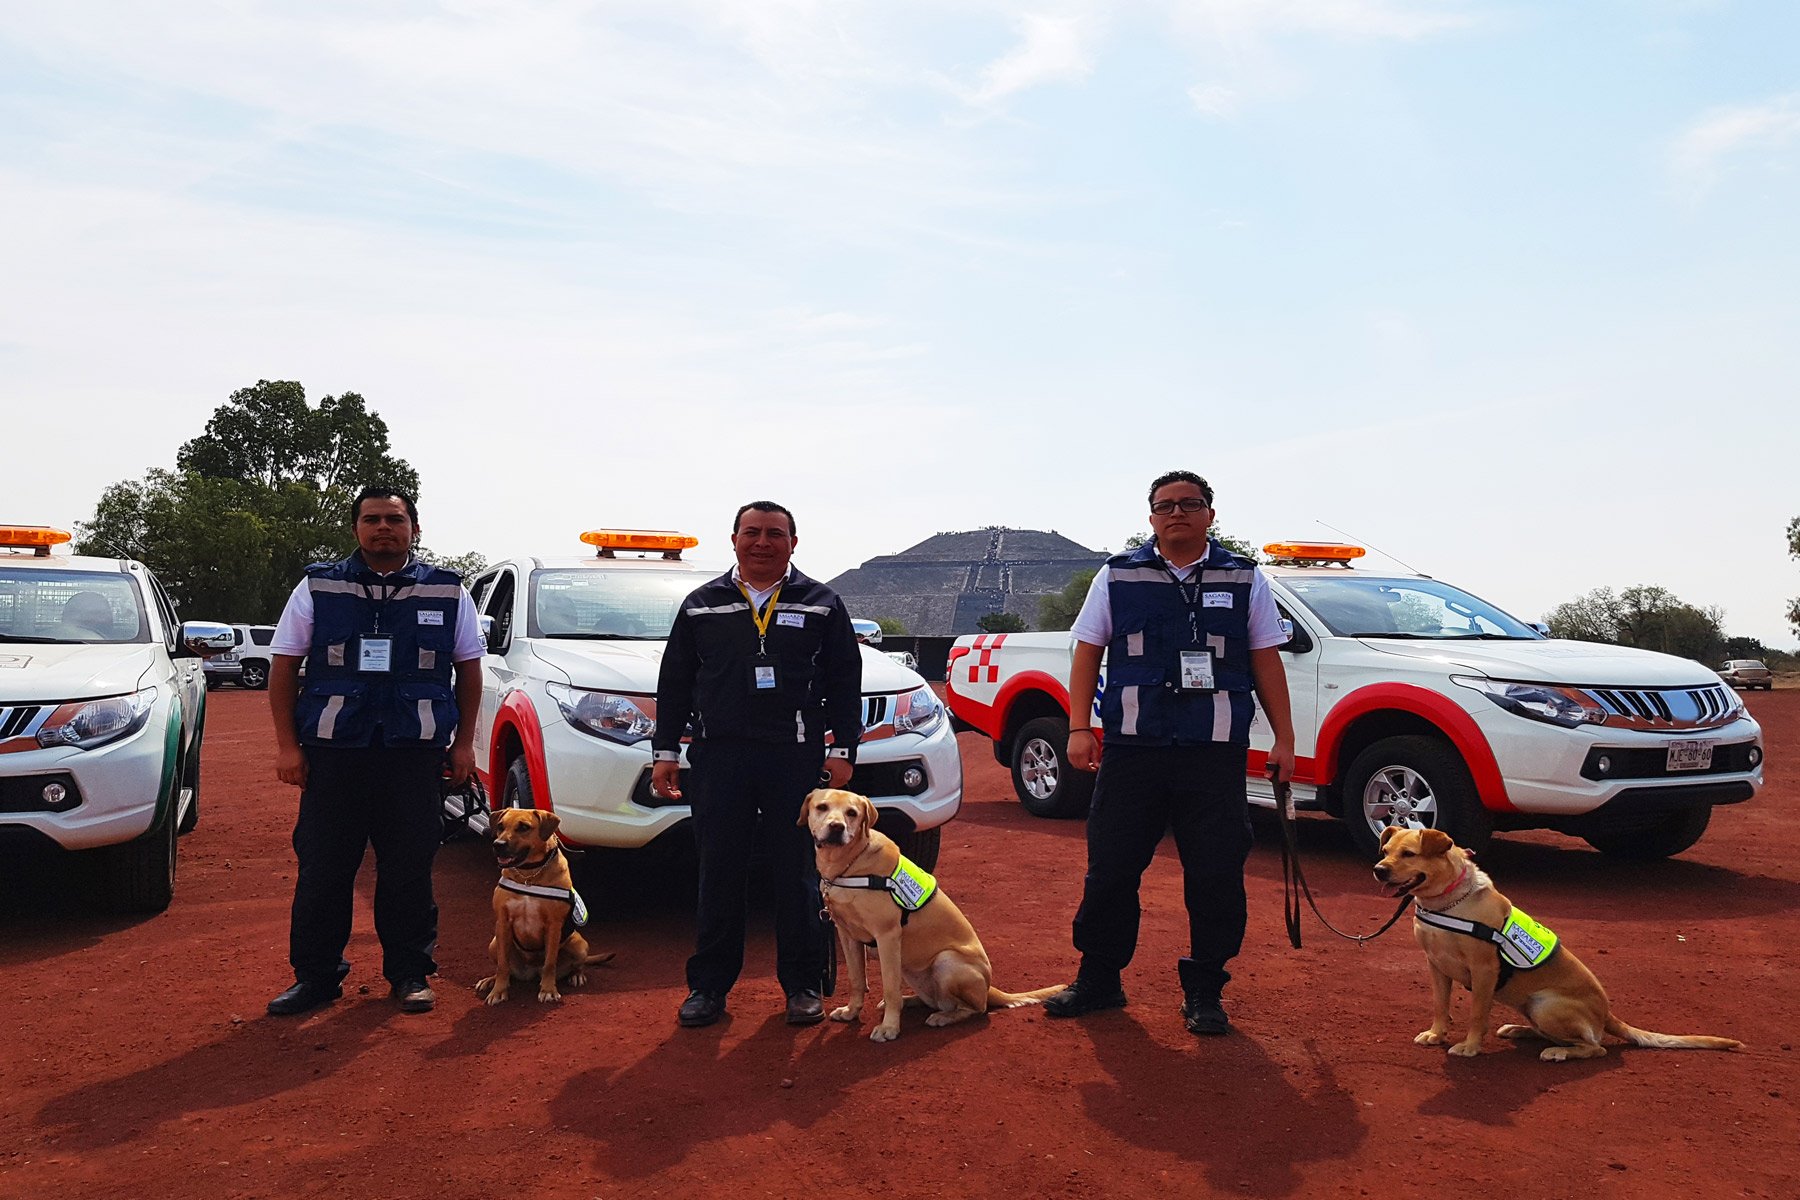 Los caninos colaboran con los oficiales en la inspección con mayor rapidez y efectividad